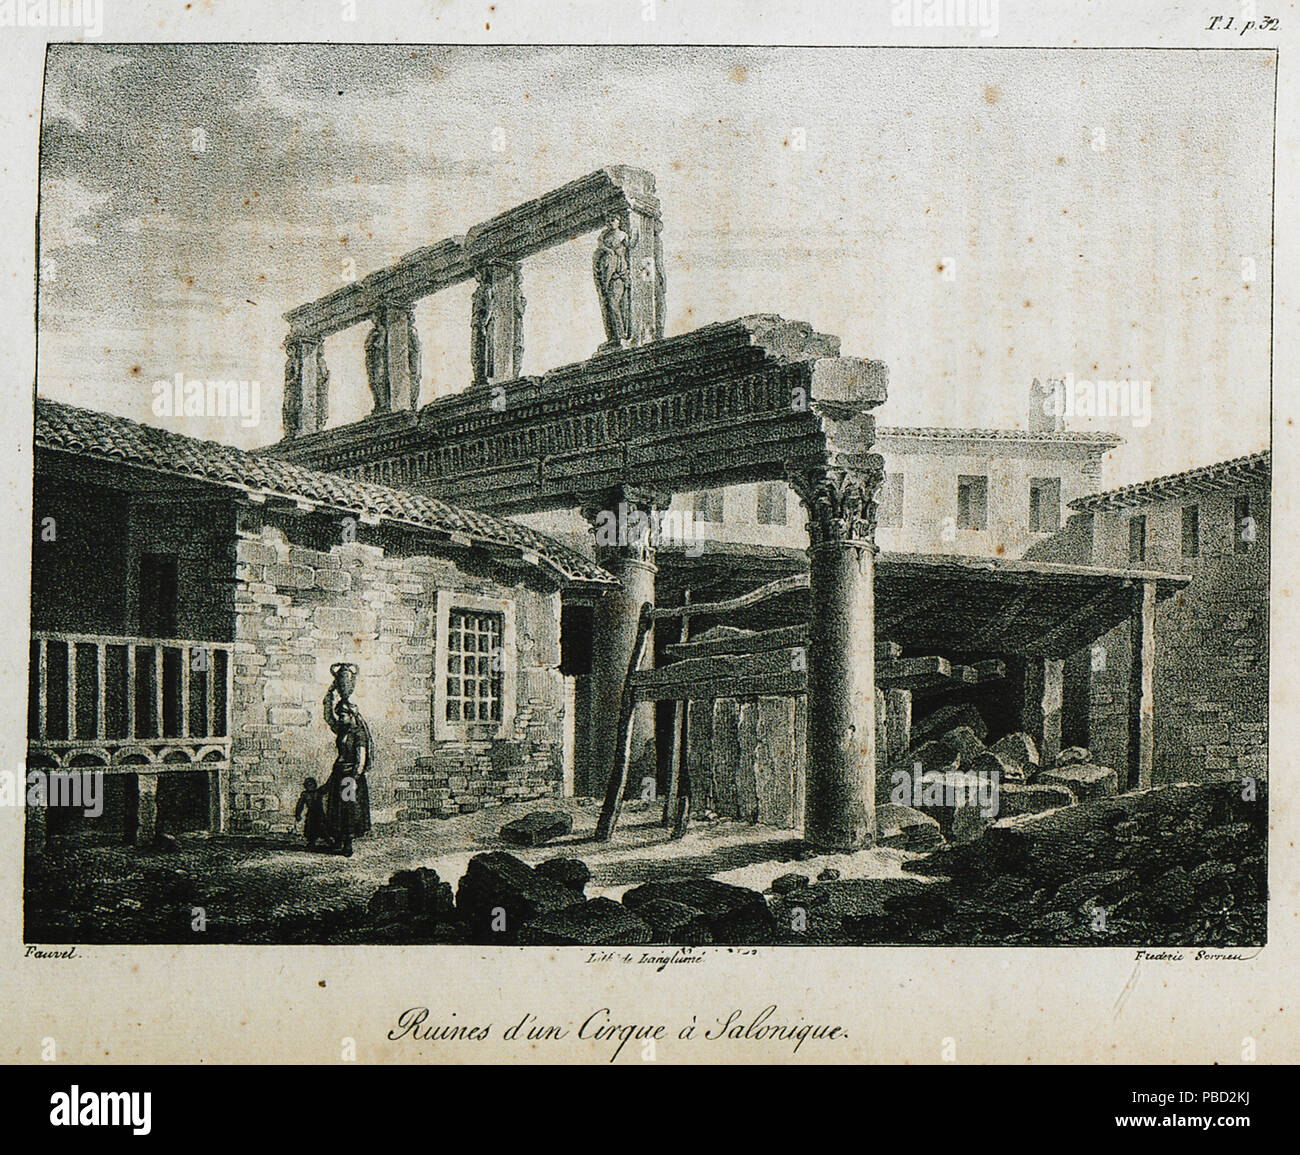 1276 Ruins d'un cirque à Salonique - CousinÉry Esprit Marie - 1831 Stock  Photo - Alamy